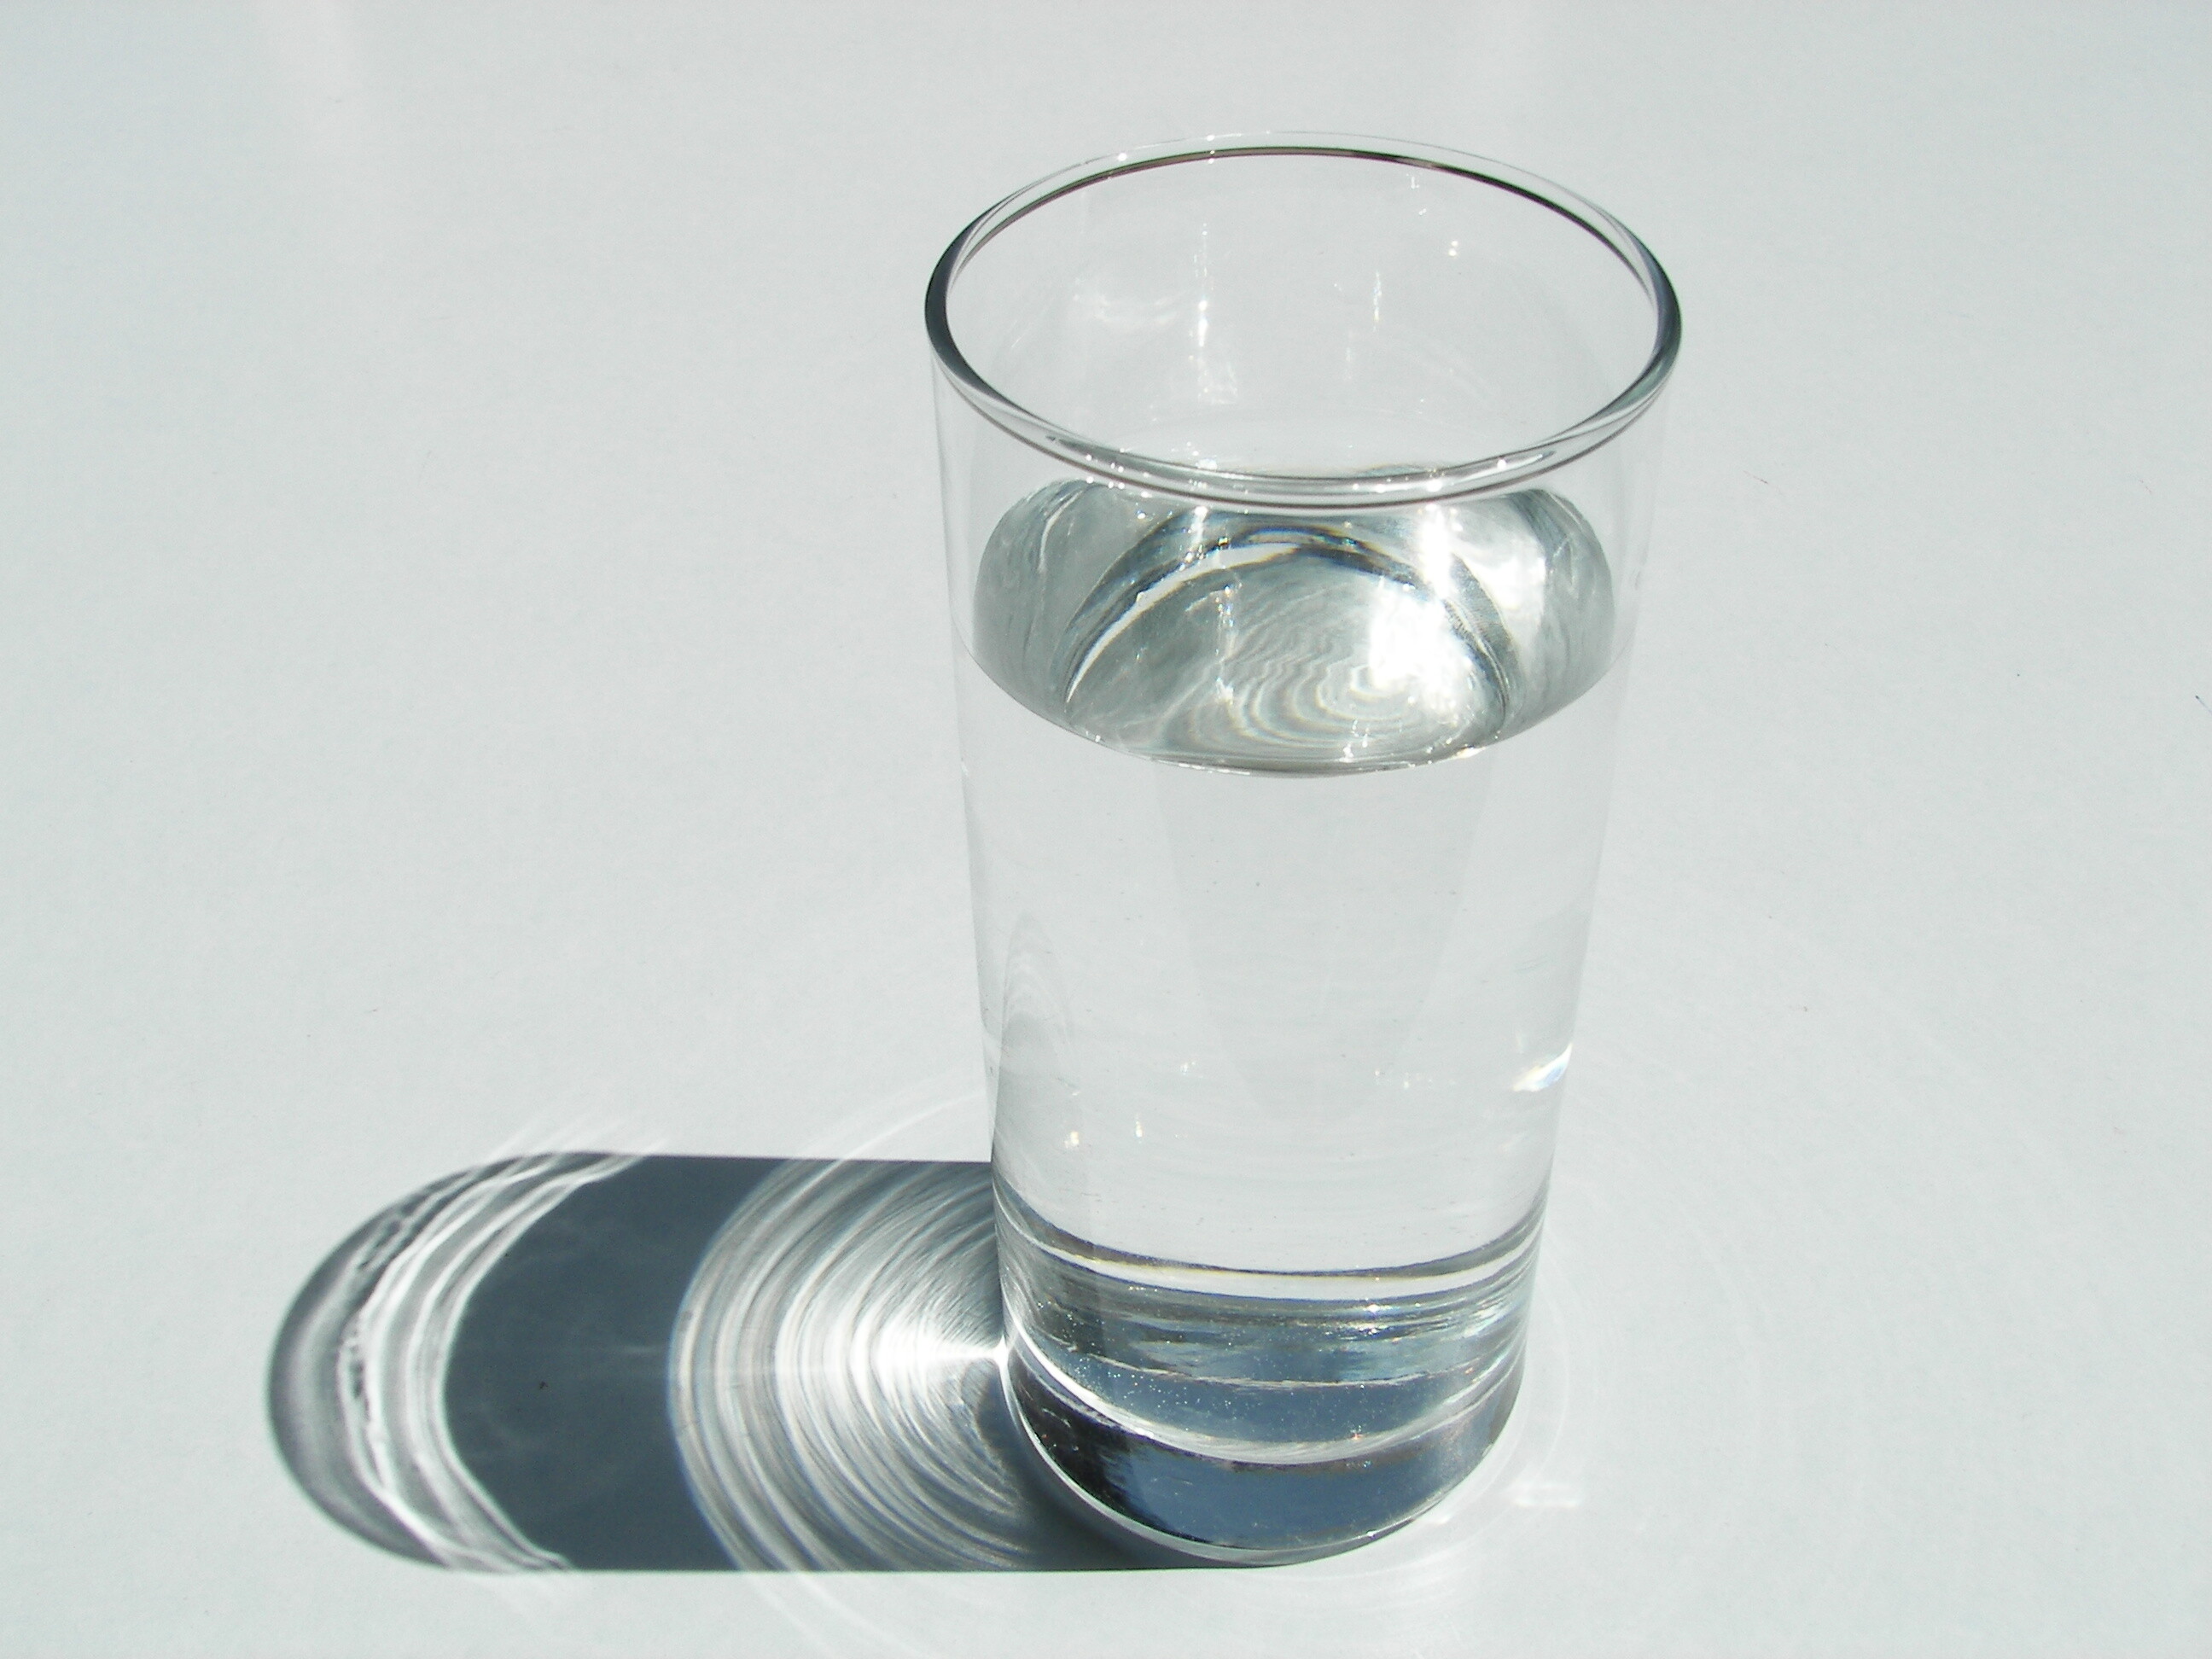 Вода в сосуде 270. Стакан воды. Стаканы для воды стеклянные. Стакан с жидкостью. Стакан воды на столе.